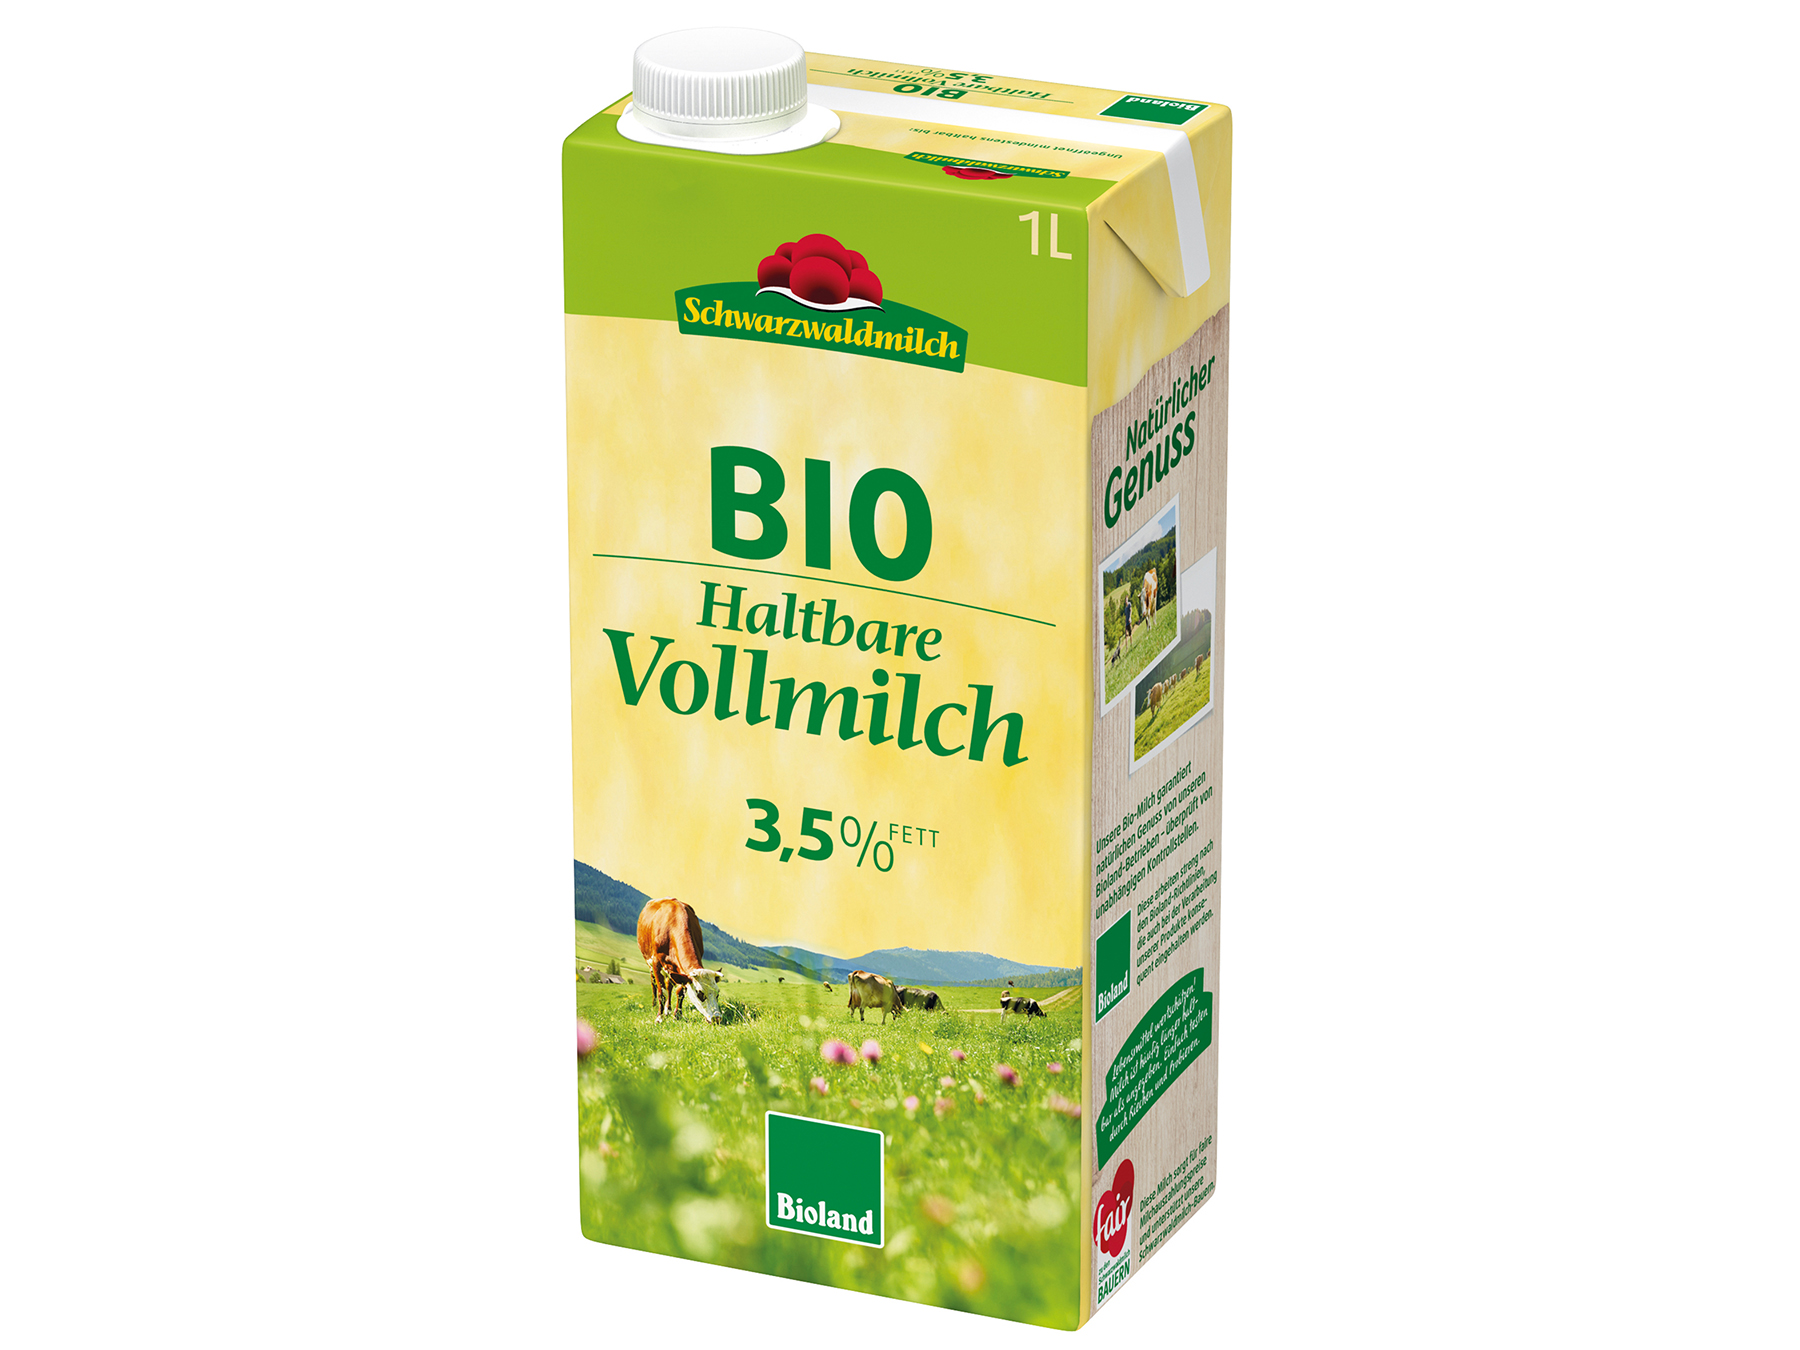 Schwarzwaldmilch Bioland haltbare Vollmilch 3,5%